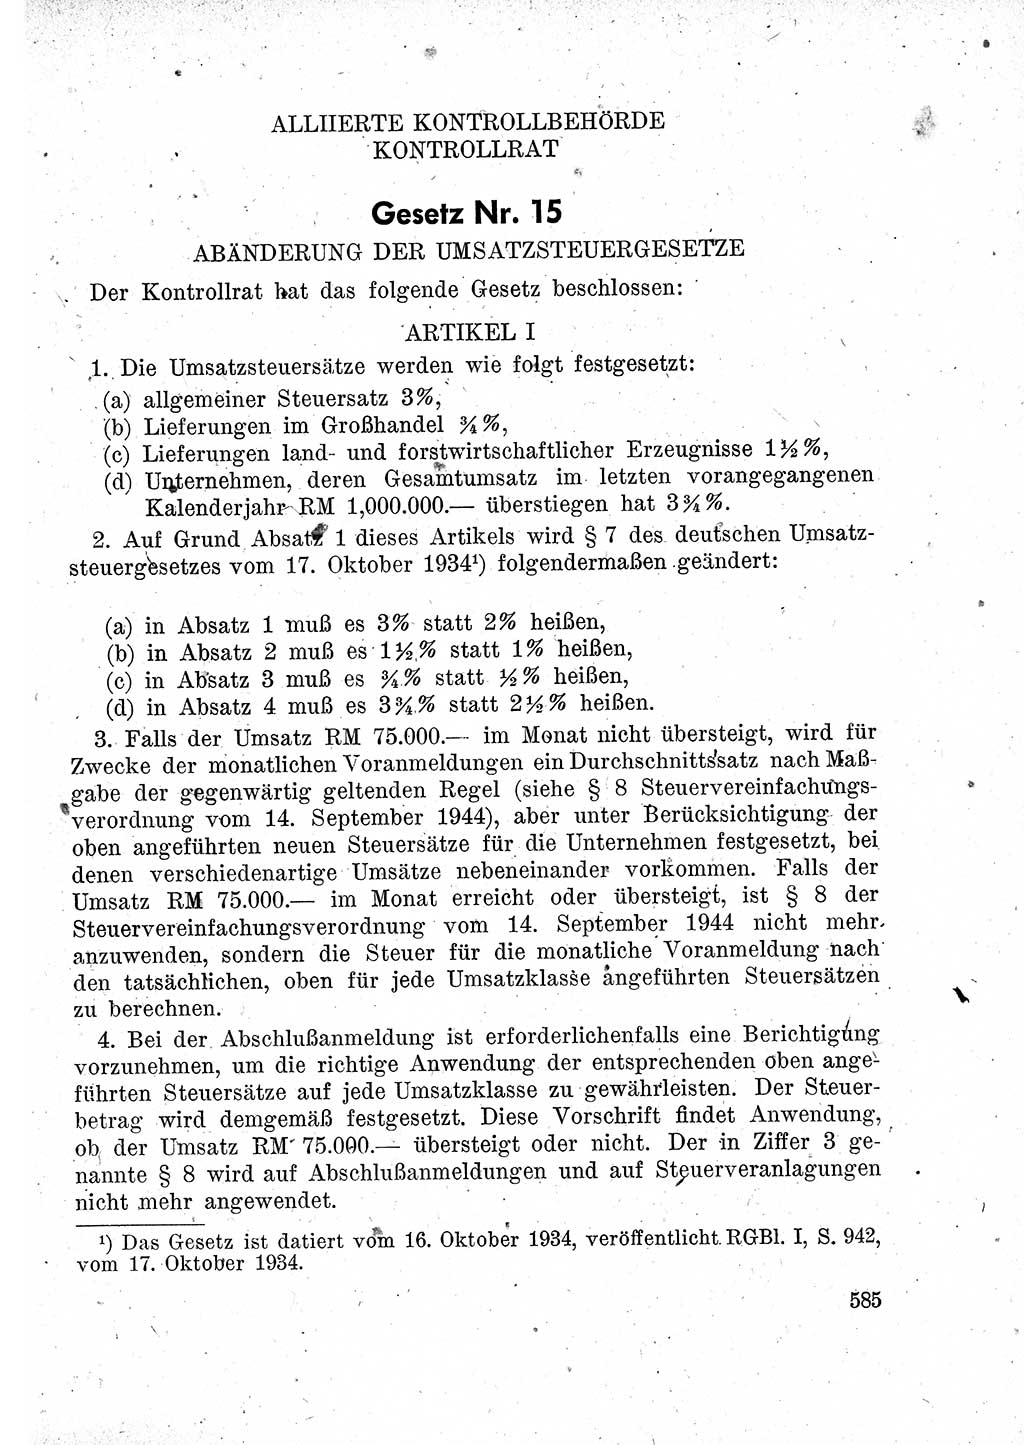 Das Recht der Besatzungsmacht (Deutschland), Proklamationen, Deklerationen, Verordnungen, Gesetze und Bekanntmachungen 1947, Seite 585 (R. Bes. Dtl. 1947, S. 585)